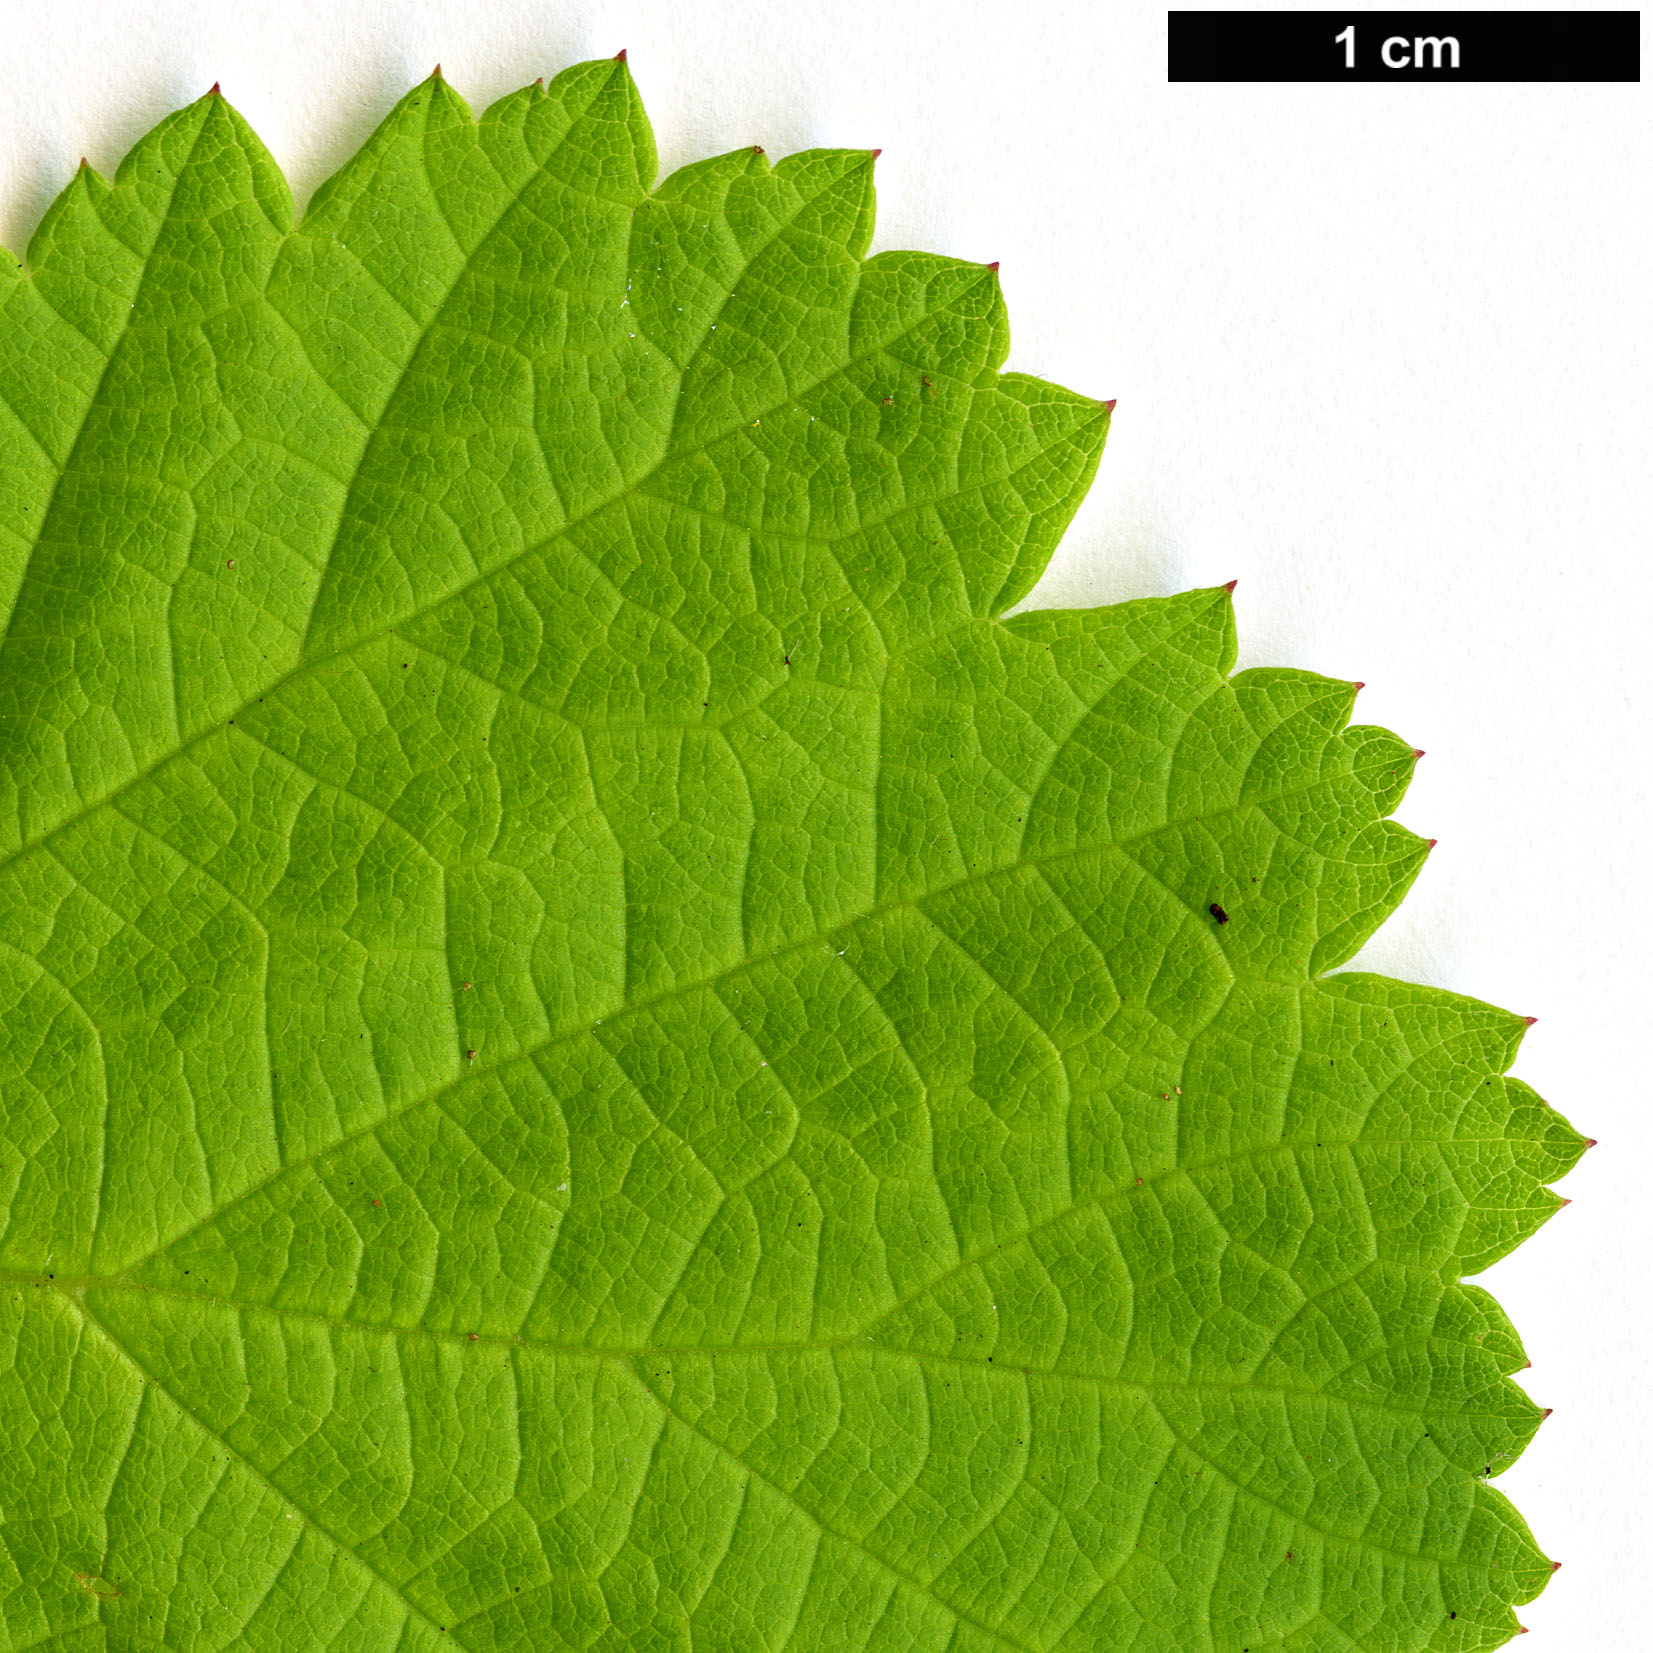 High resolution image: Family: Rosaceae - Genus: Rubus - Taxon: parvifolius - SpeciesSub: ‘Ogon’